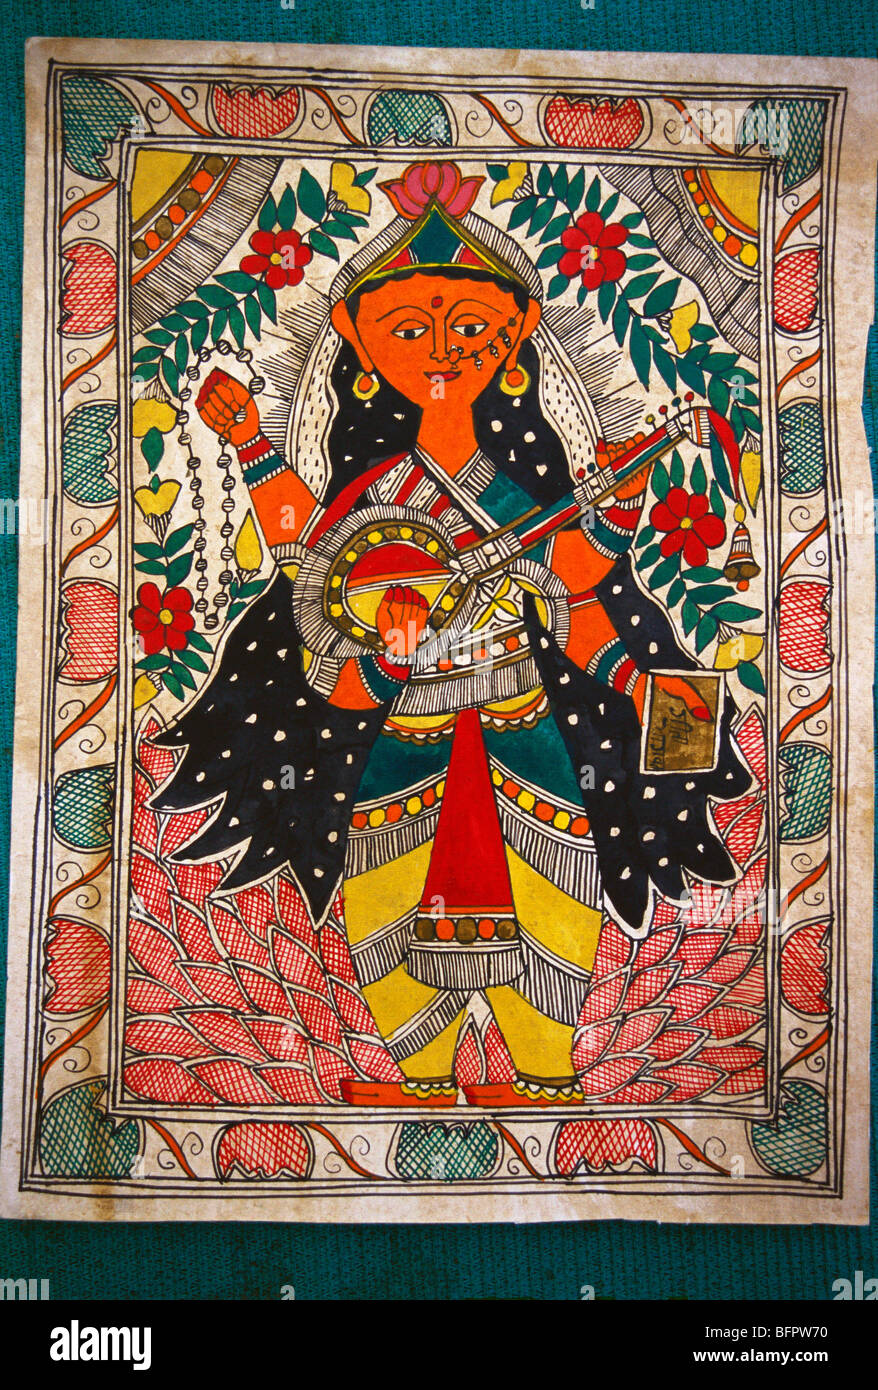 Madhubani peinture de la déesse Saraswati, Sarasvati, déesse hindoue de la connaissance, de la musique, de l'art, de la parole, de la sagesse et de l'apprentissage,Peinture de Mithila, Banque D'Images